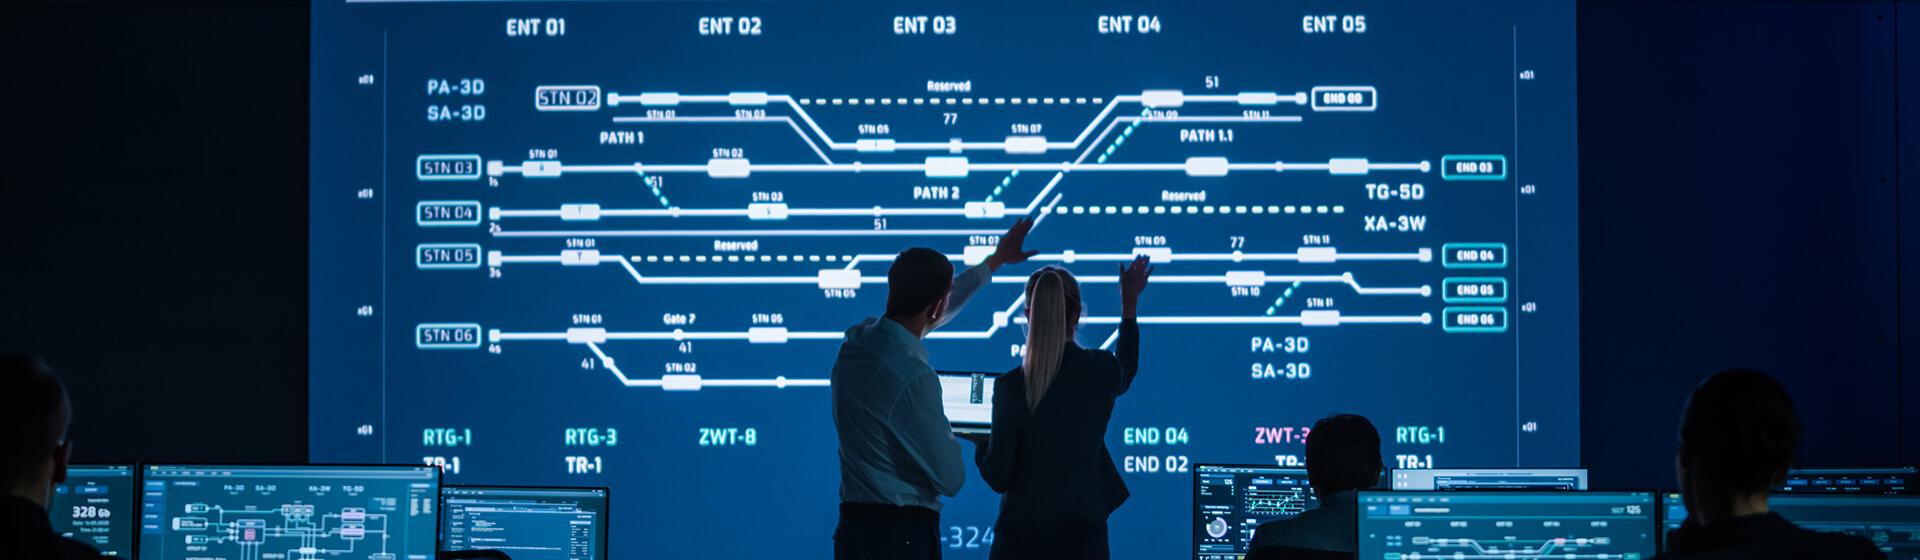 コントロールルームで、男性と女性が会話をしている画像。大型モニターの画面には、コンテナターミナルの路線図が表示されている。